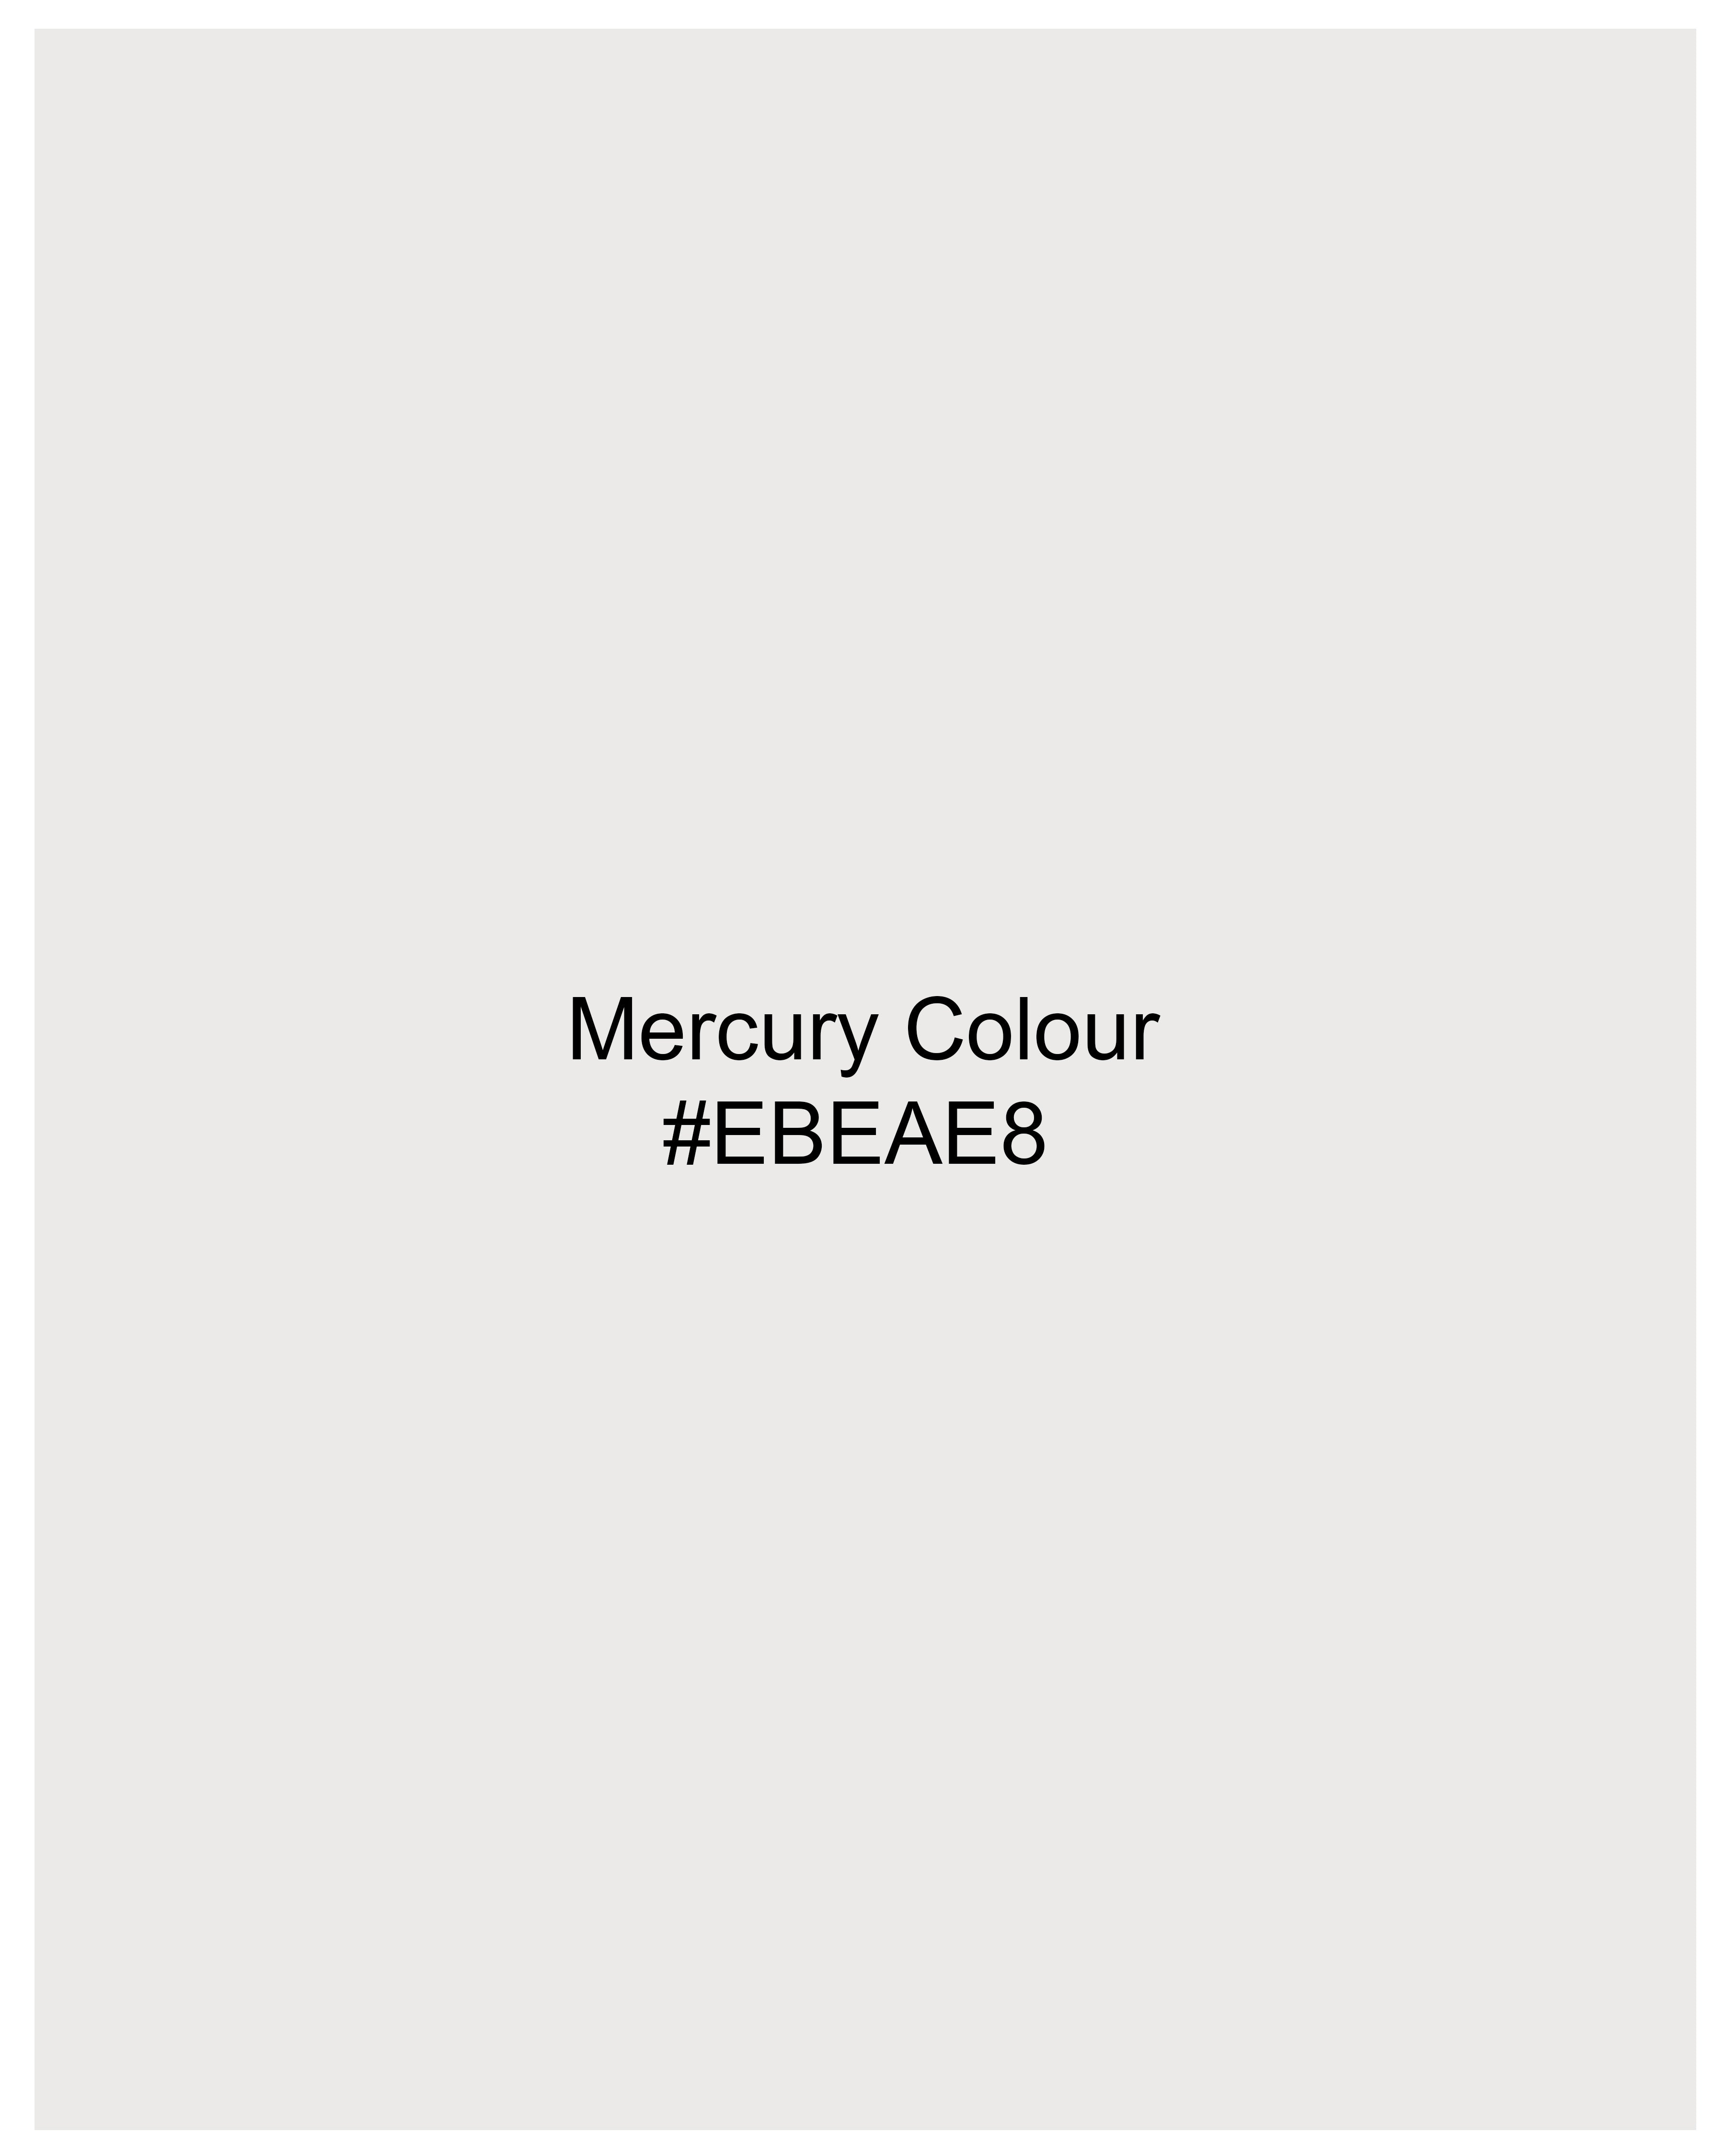 Mercury Off White Chambray Shorts SR244-28, SR244-30, SR244-32, SR244-34, SR244-36, SR244-38, SR244-40, SR244-42, SR244-44